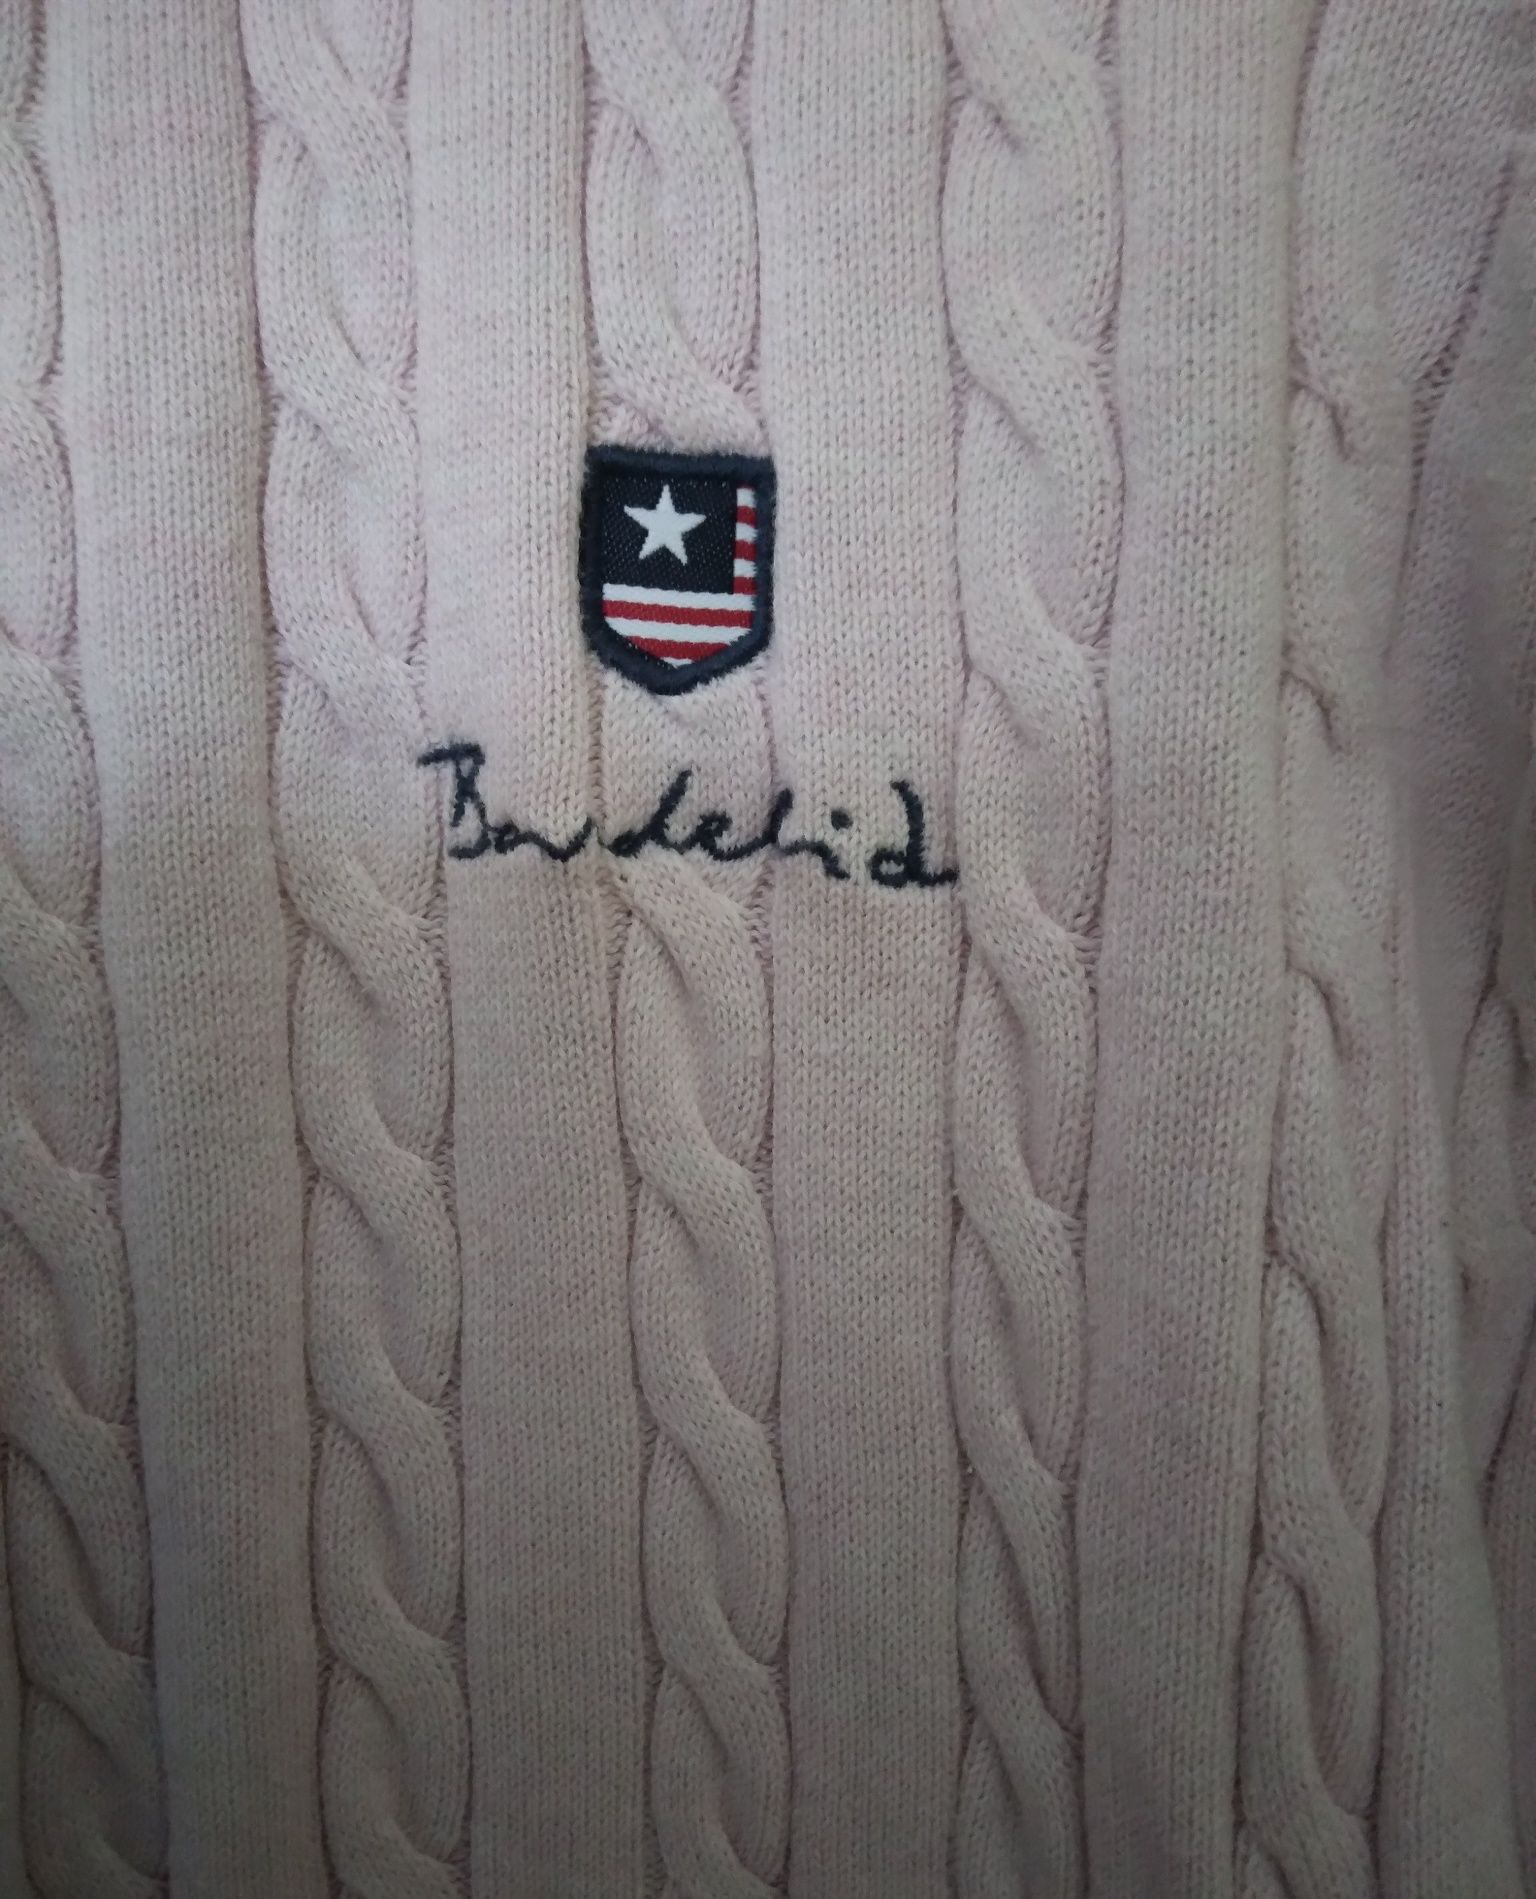 Damski sweter o splocie warkoczowym Bondelid